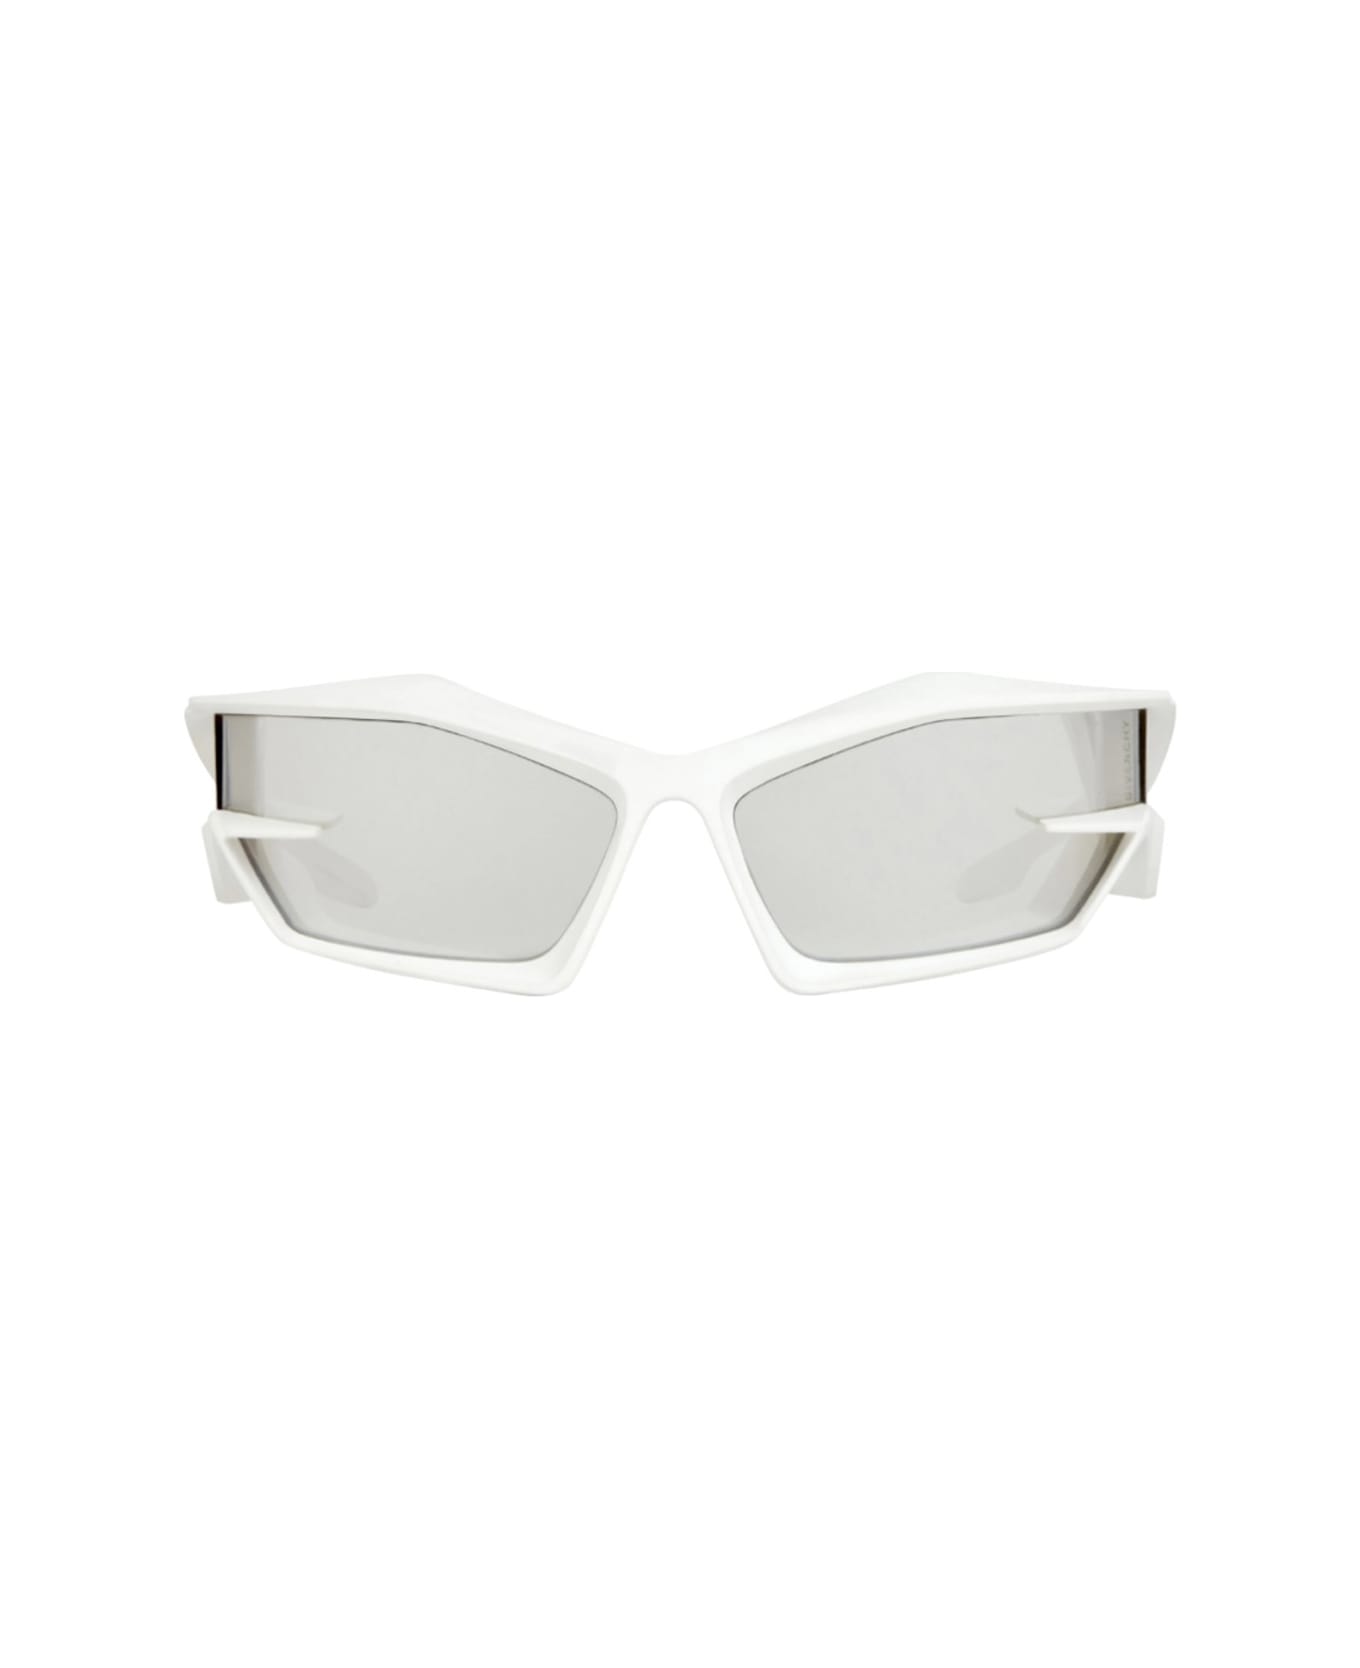 Givenchy Eyewear Gv40049i 21c Sunglasses - Bianco